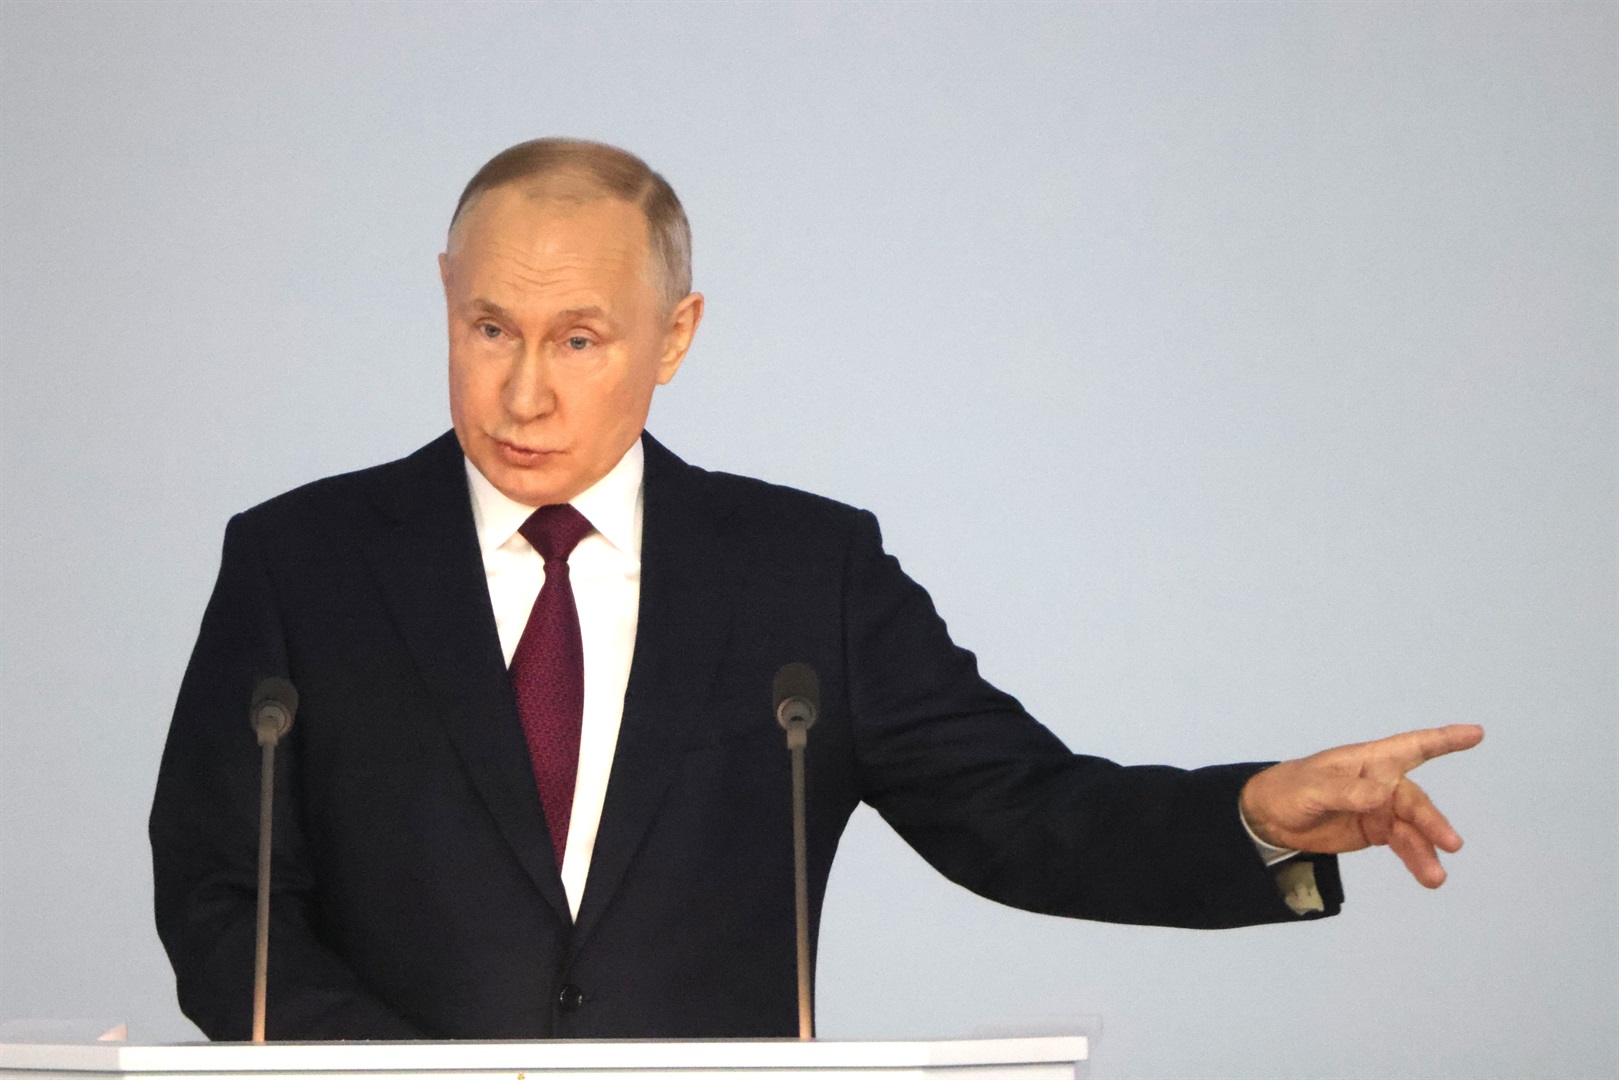 Putin, Rusya'nın nükleer kapasiteli bir ICBM fırlatmasıyla övünmek istedi - ancak fırlatma başarısız oldu, diyor rapor